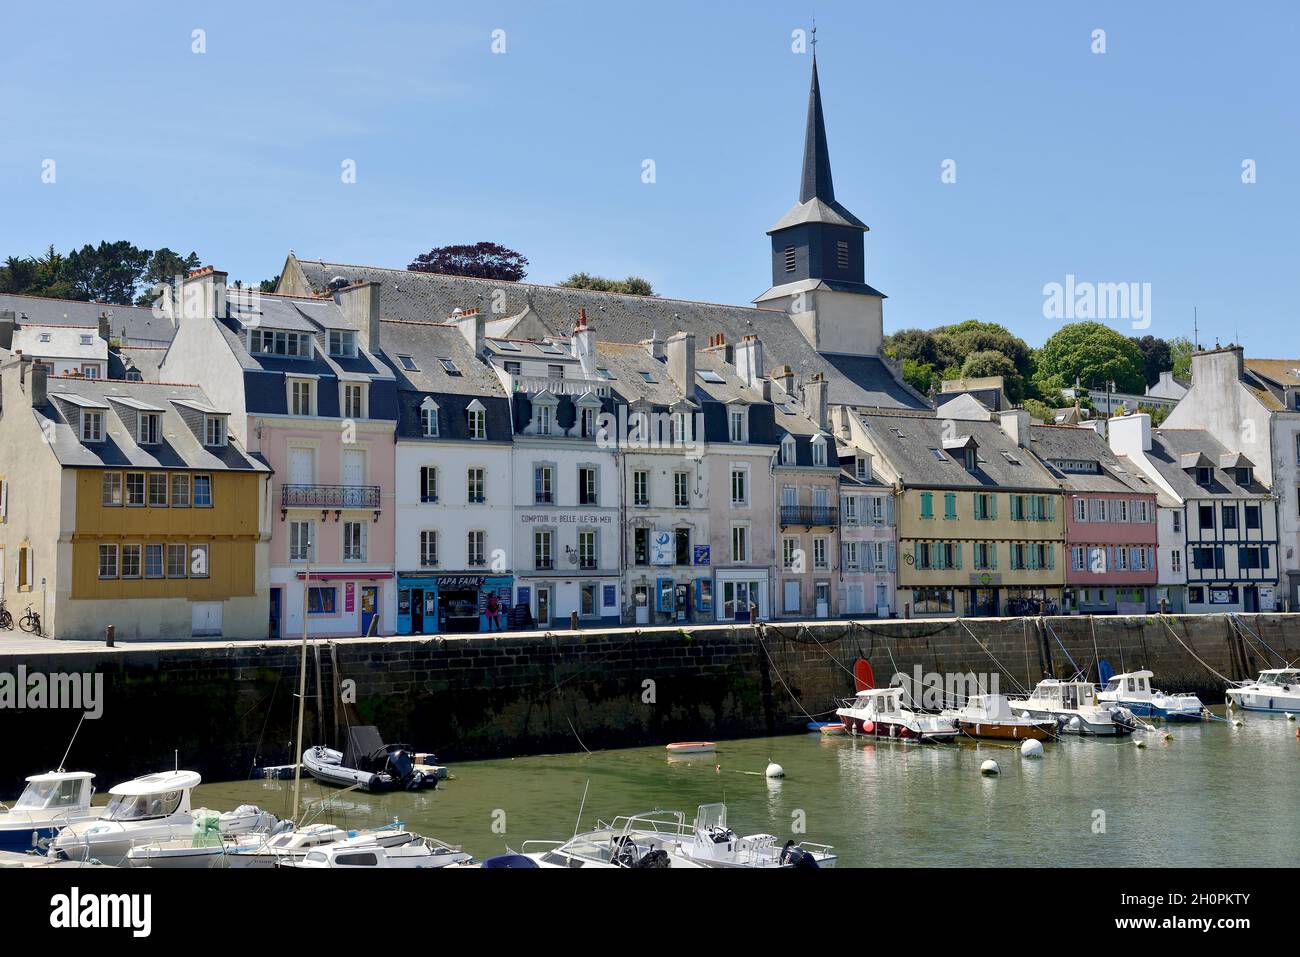 Ile Belle Ile en Mer (au large de la Bretagne, au nord-ouest de la France) : ville du Palais.Le port et la ville Banque D'Images